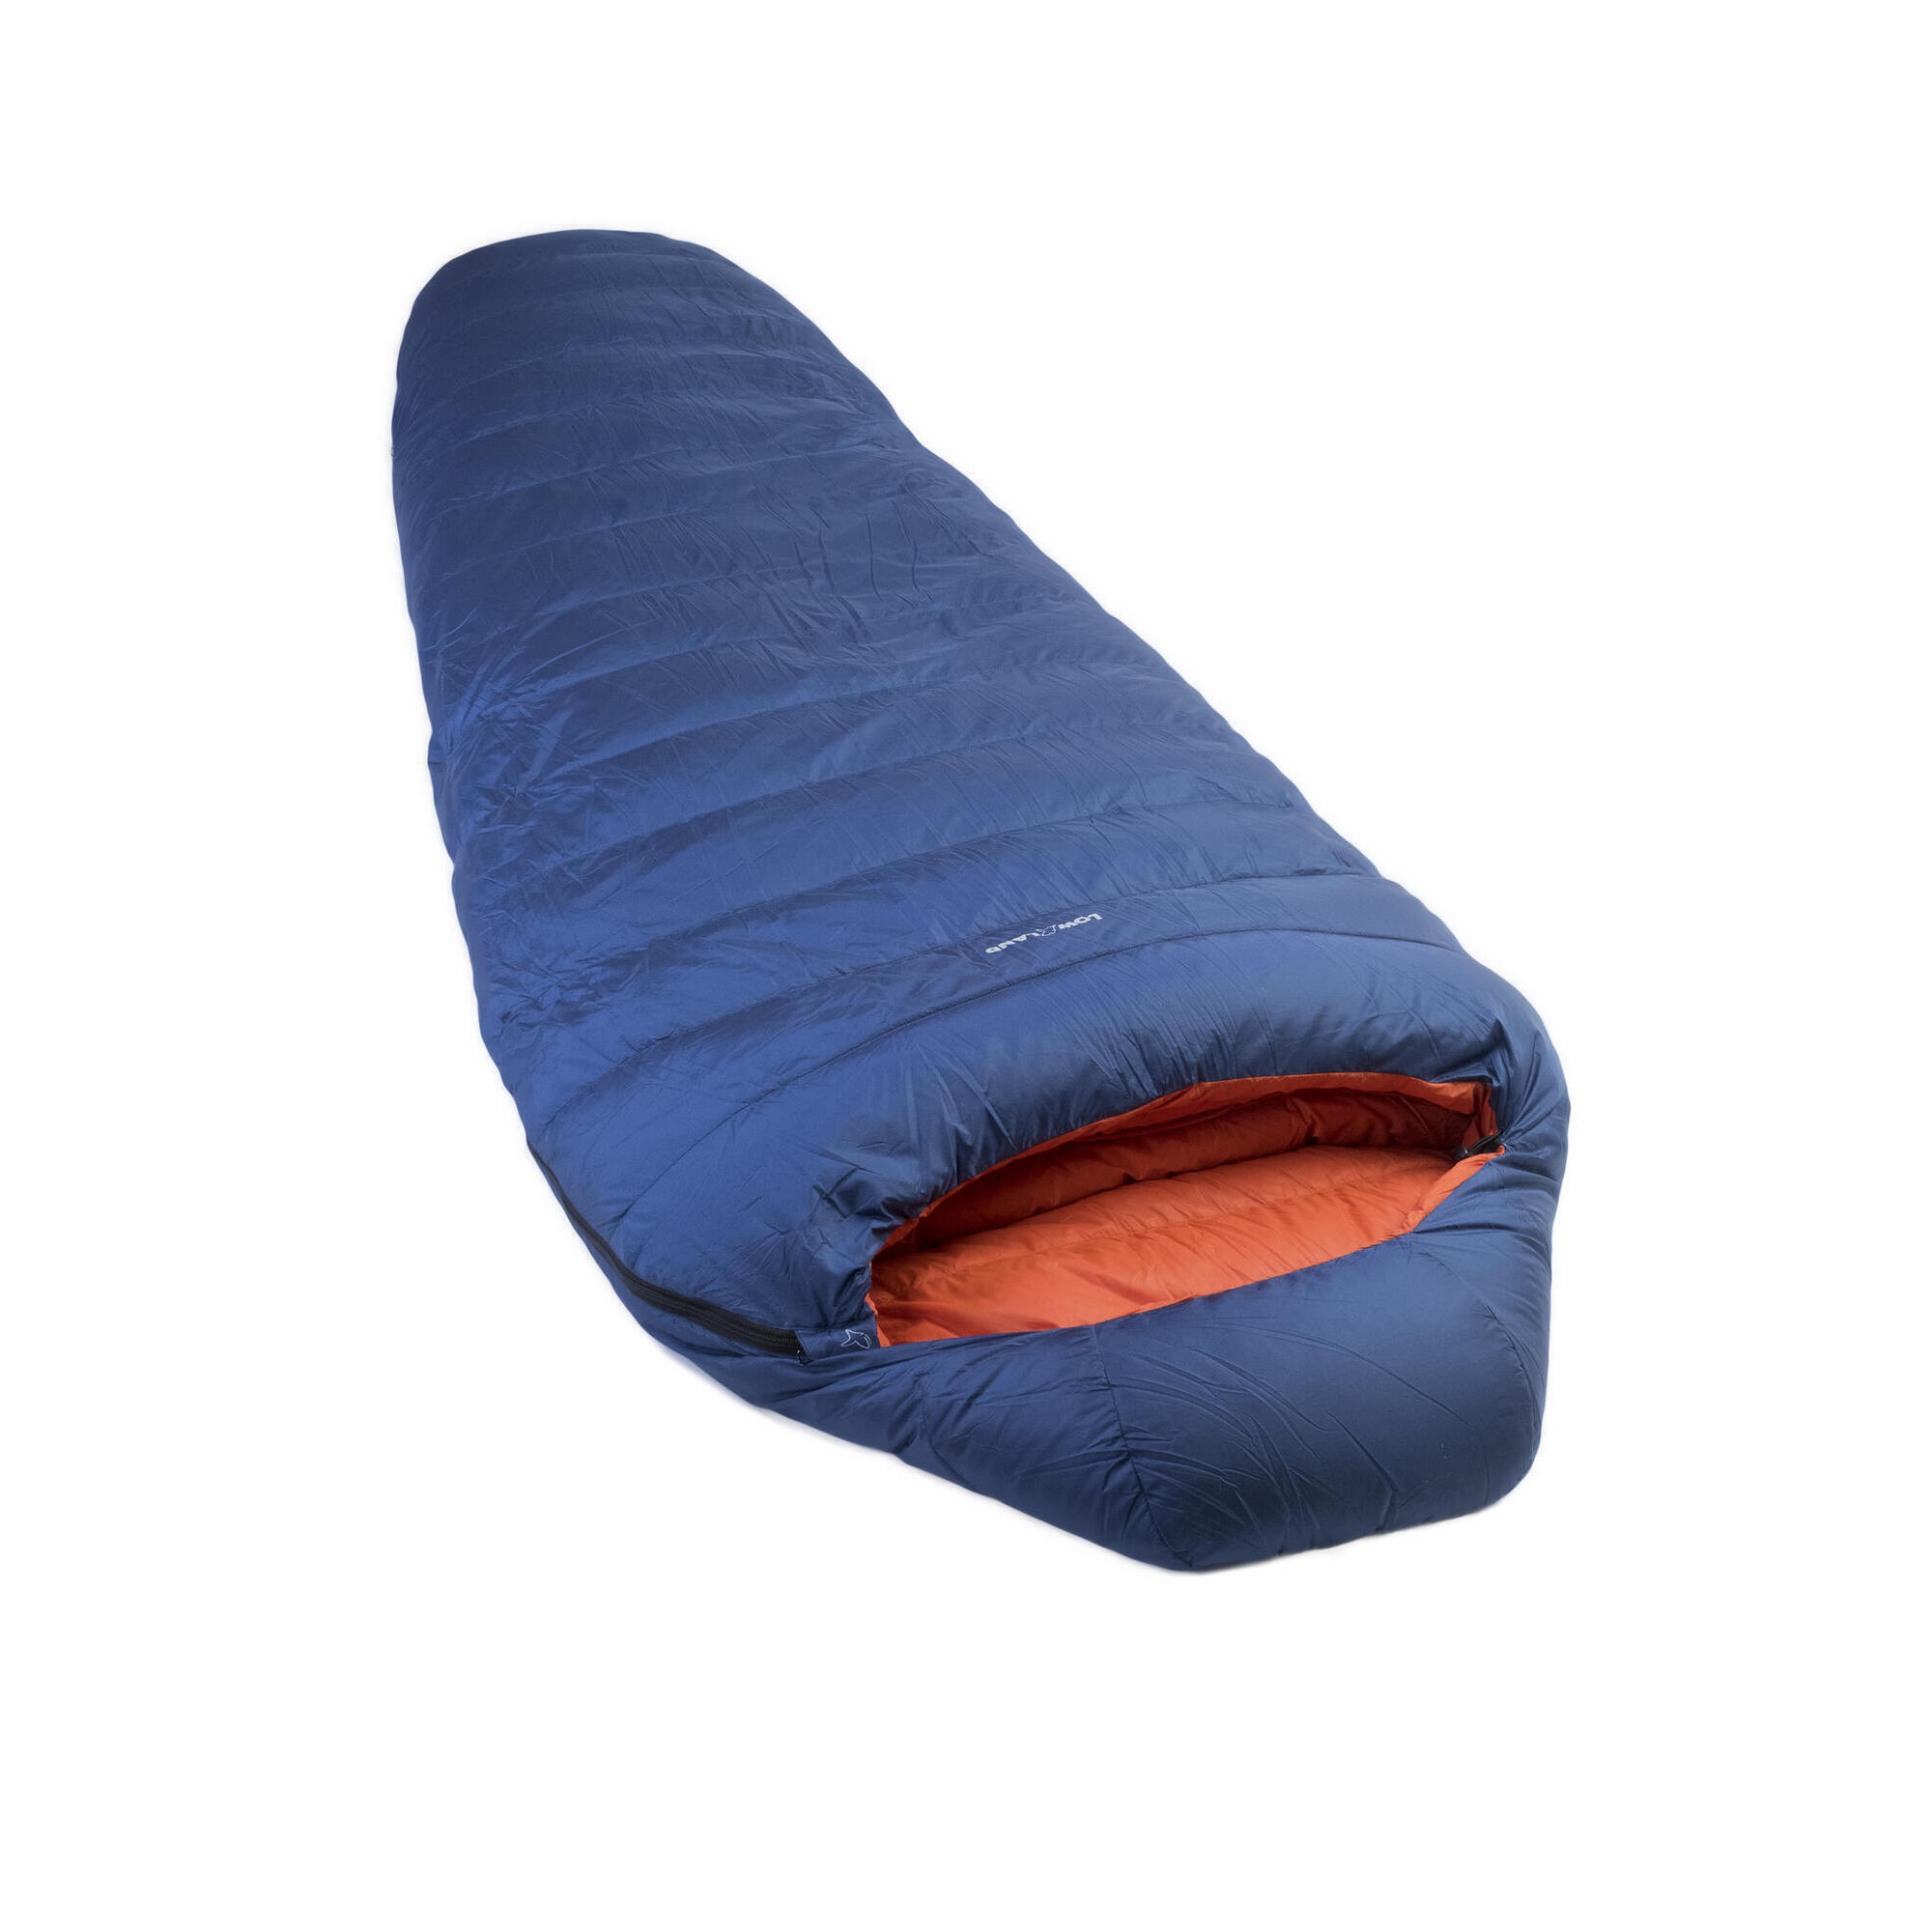 спальный мешок увеличенного размера columbus xxl 5 10c Мешок Kibo - 5 пуховый спальный нейлоновый 225x80 см, сине - оранжевый